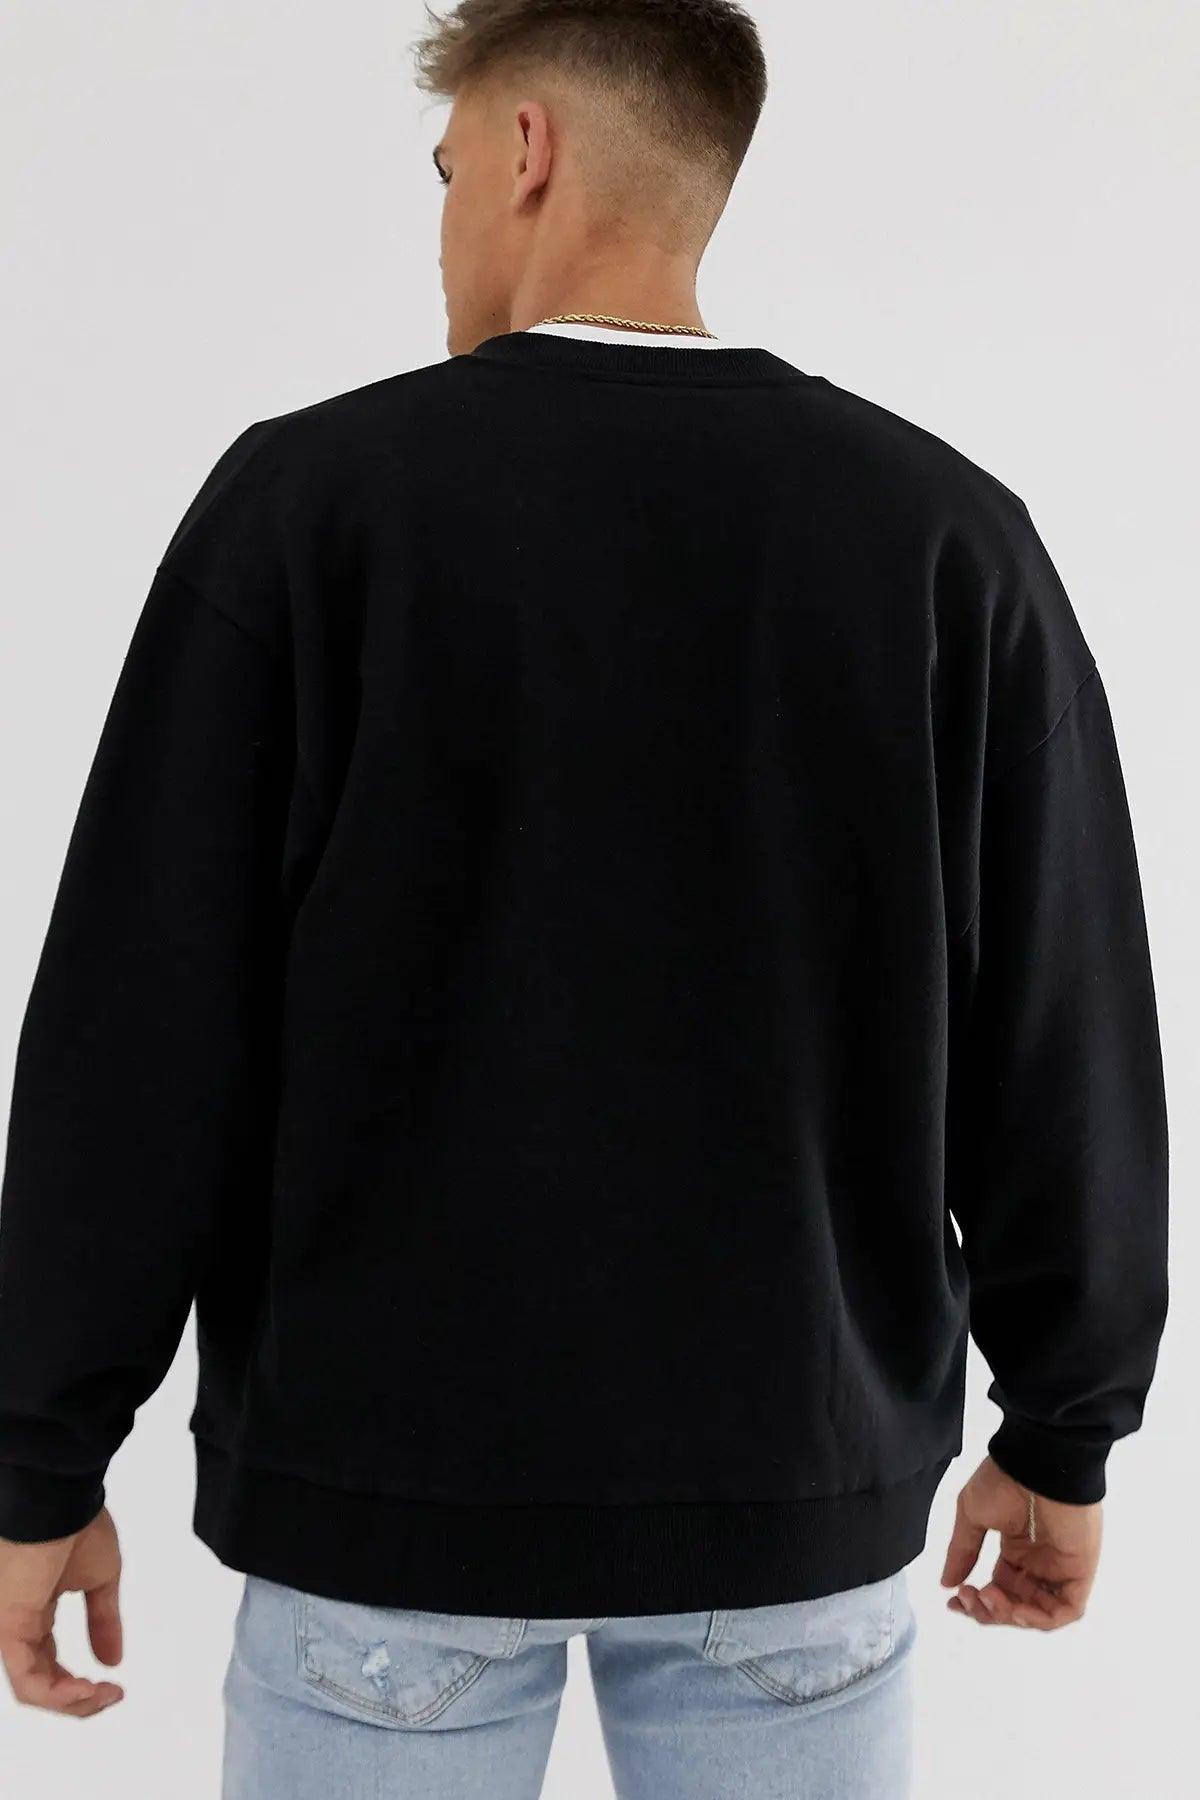 Los Angeles Oversize Erkek Sweatshirt - PΛSΛGE